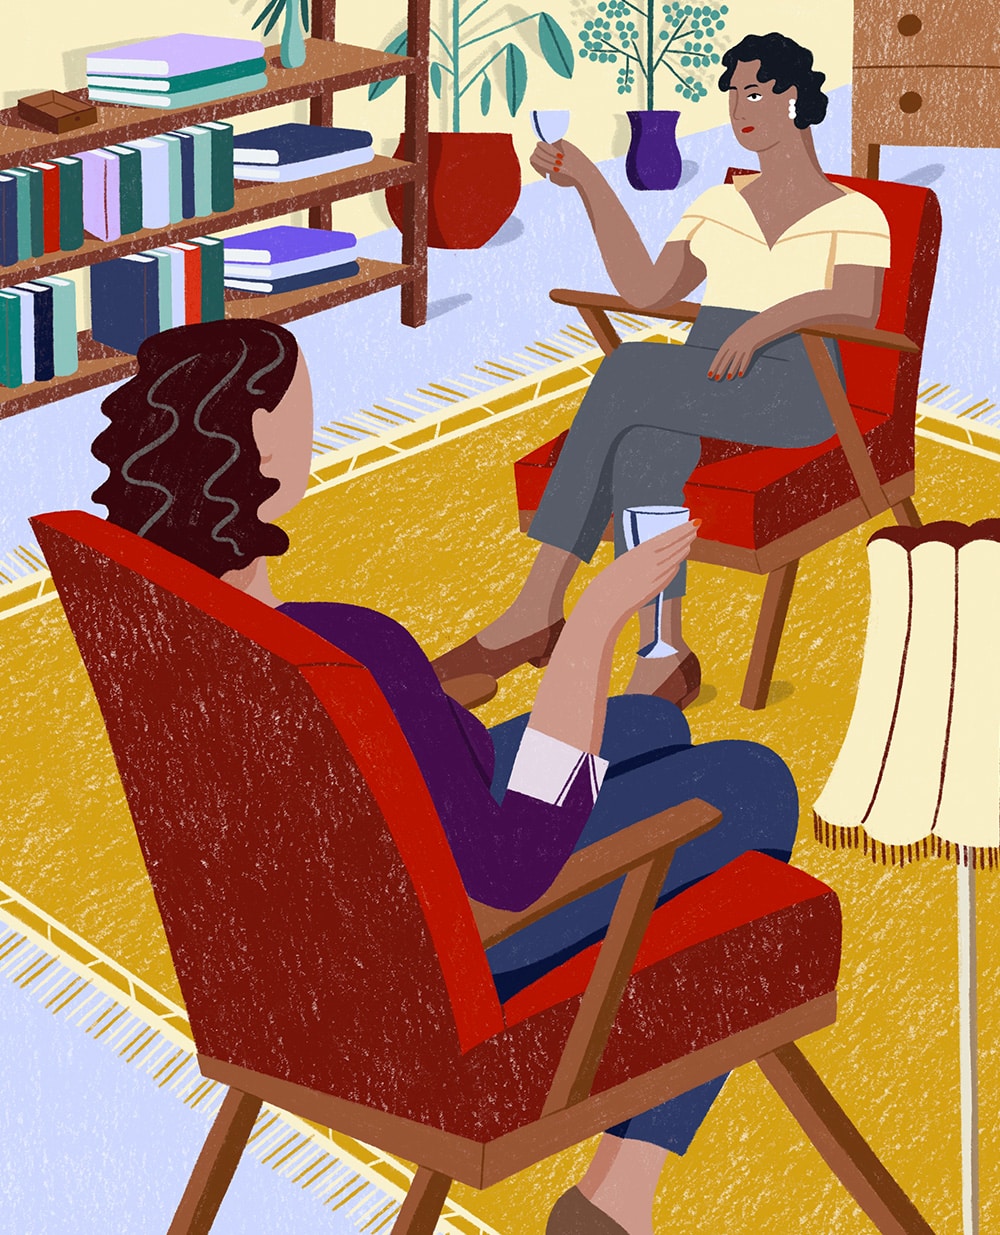 Illustration von Tatjana Prenzel über die Emanzipation der Frauen: Zwei Frauen sitzen sich auf Sesseln gegenüber, trinken ein Glas Wein und unterhalten sich.